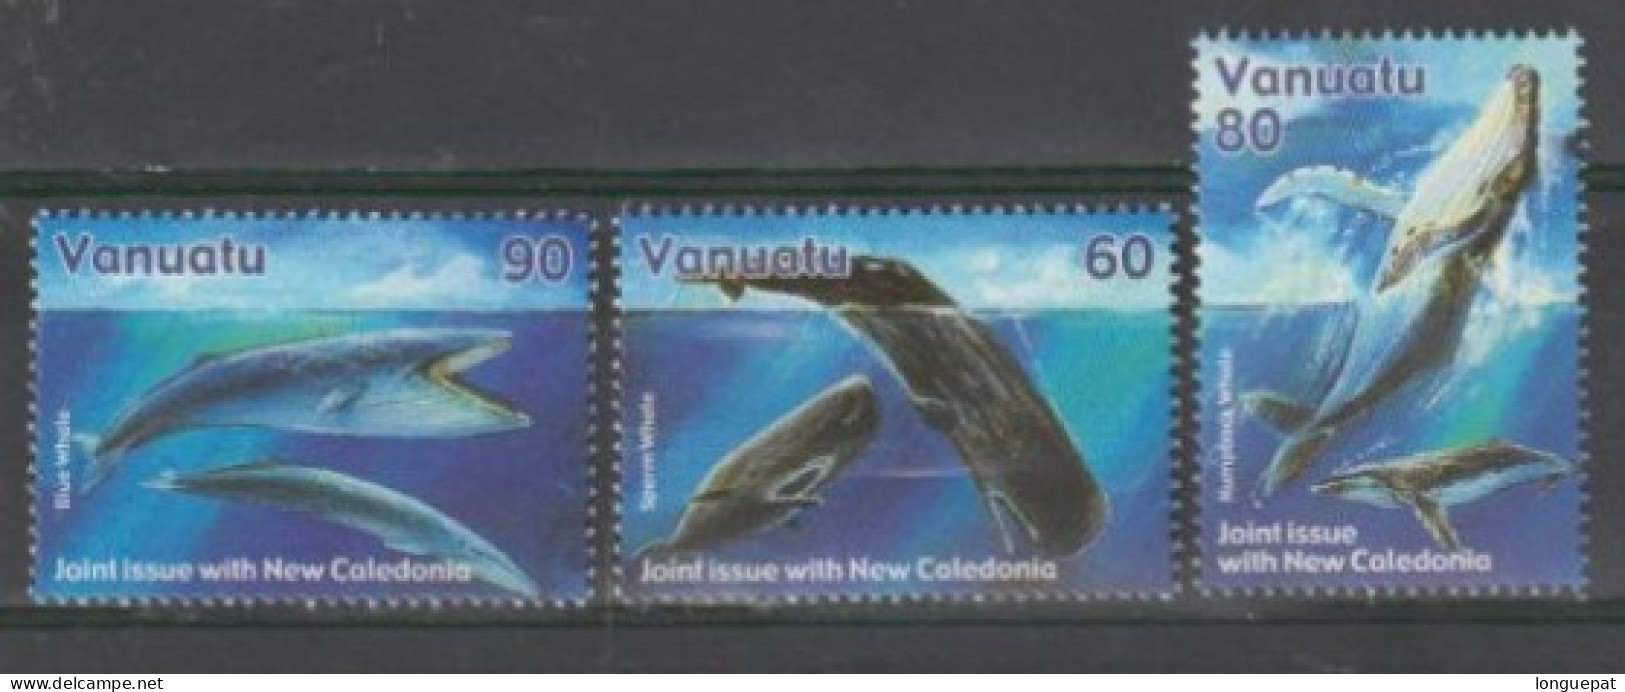 VANUATU - Faune Marine - Baleines : Cachalot, Baleine à Bosse, Baleine Bleue - Cétacés - Mammifères - - Baleines